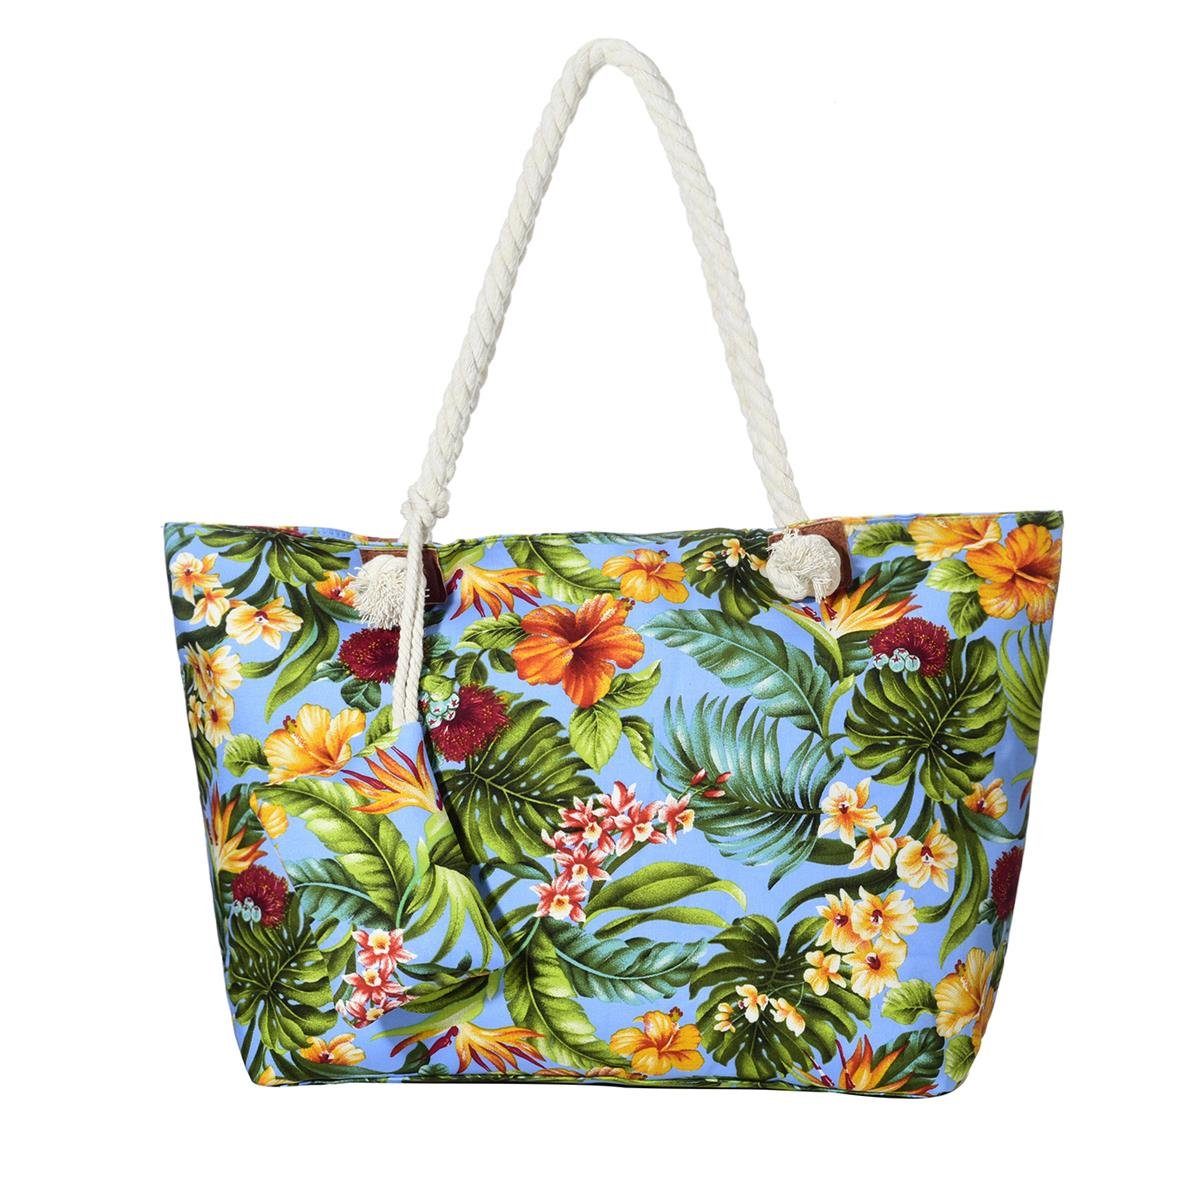 Reißverschluss, Schultertasche tolle (2-tlg), mit Motive Beach Blumen südsee Strandtasche, Style Shopper Große DonDon Strandtasche